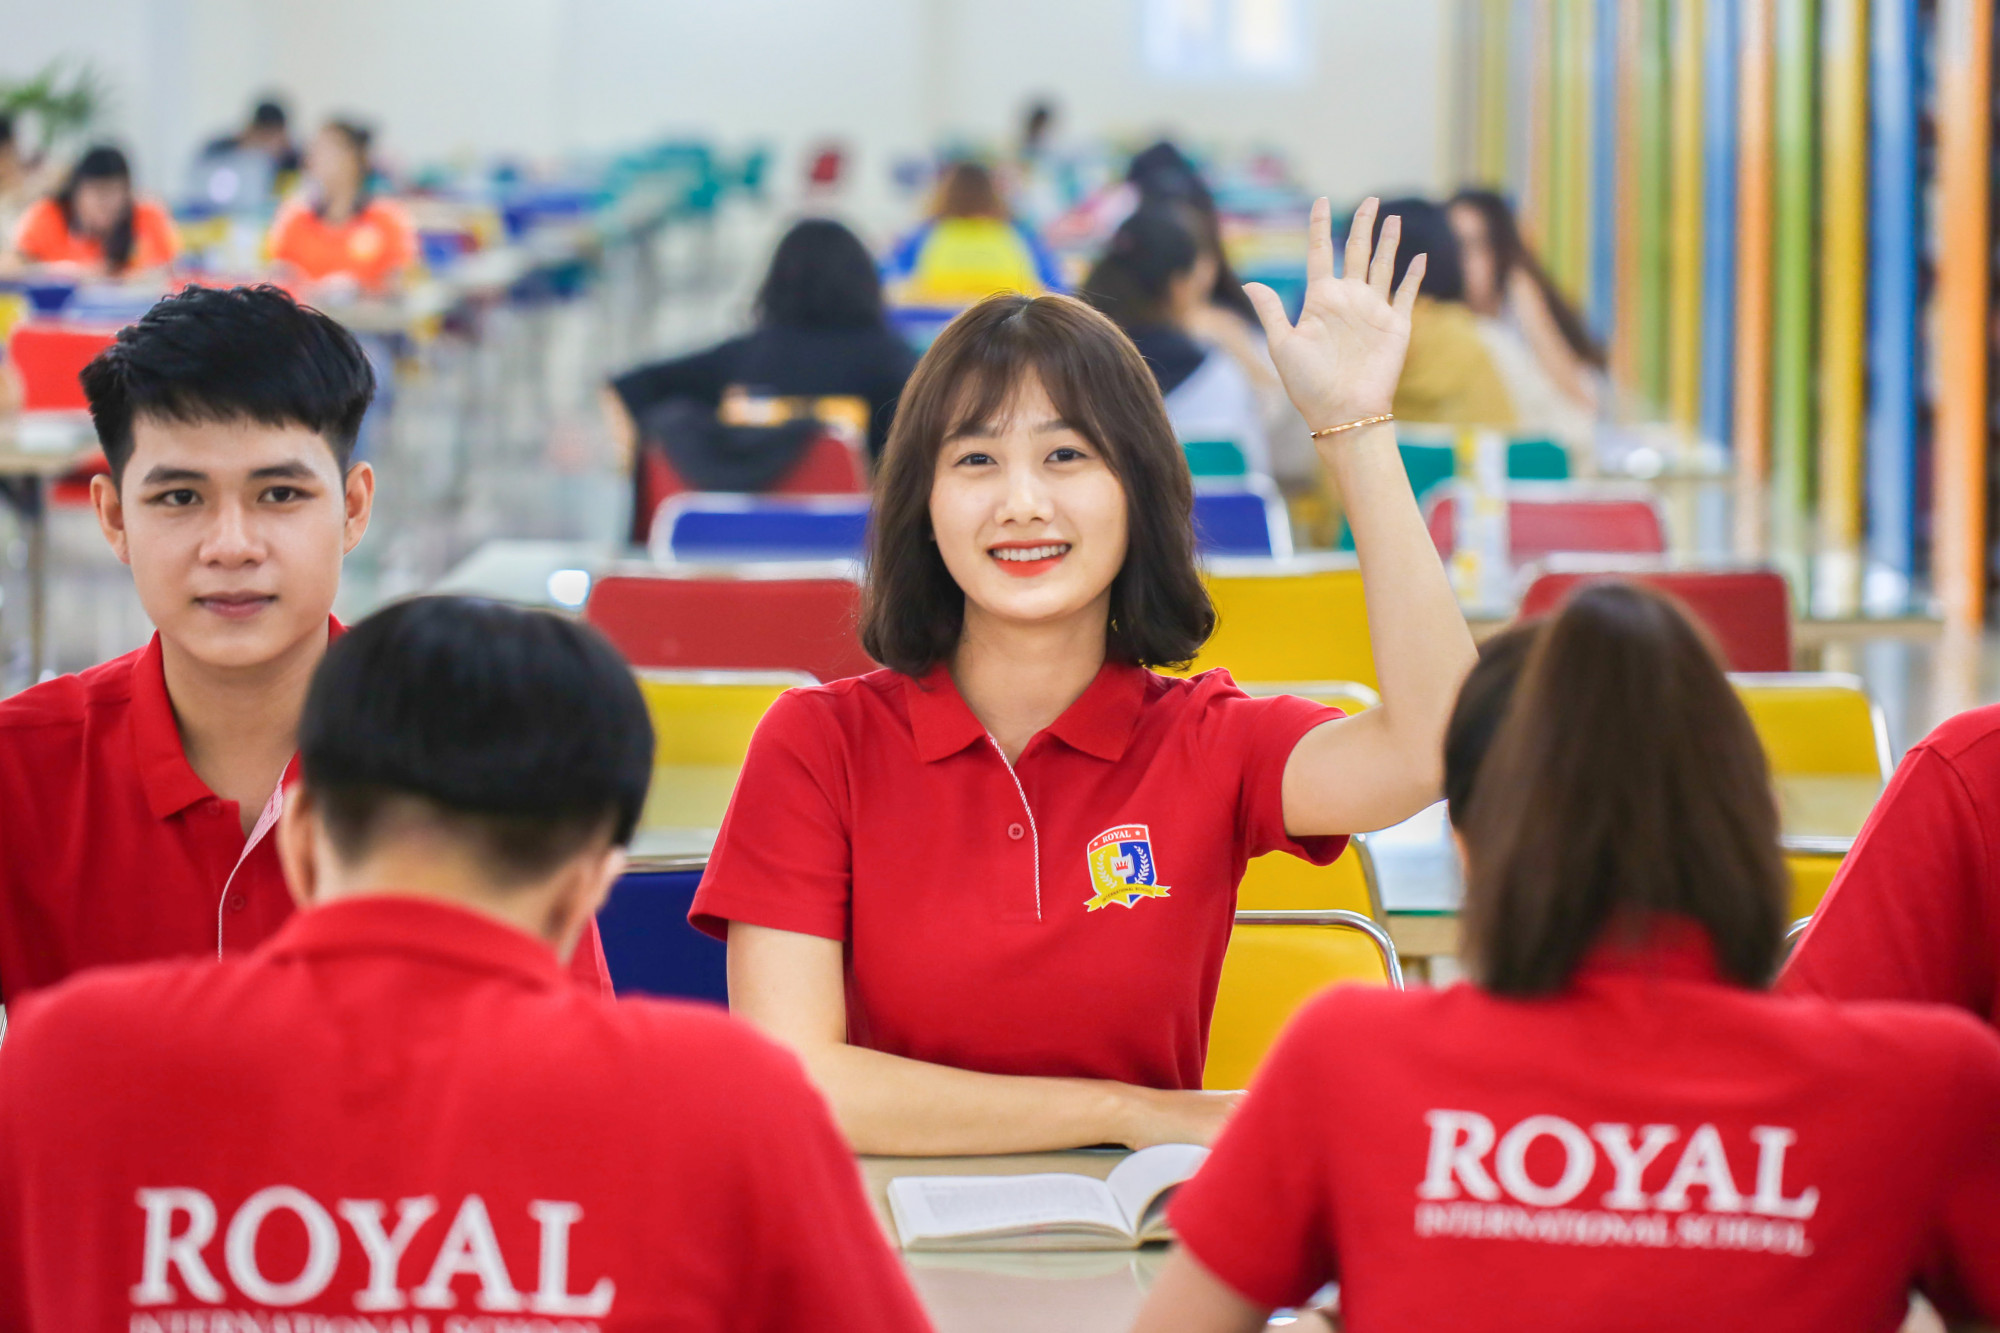 Royal School chính thức tuyển sinh (lớp 1 đến lớp 12) từ năm 2020. Nguồn ảnh: Royal School